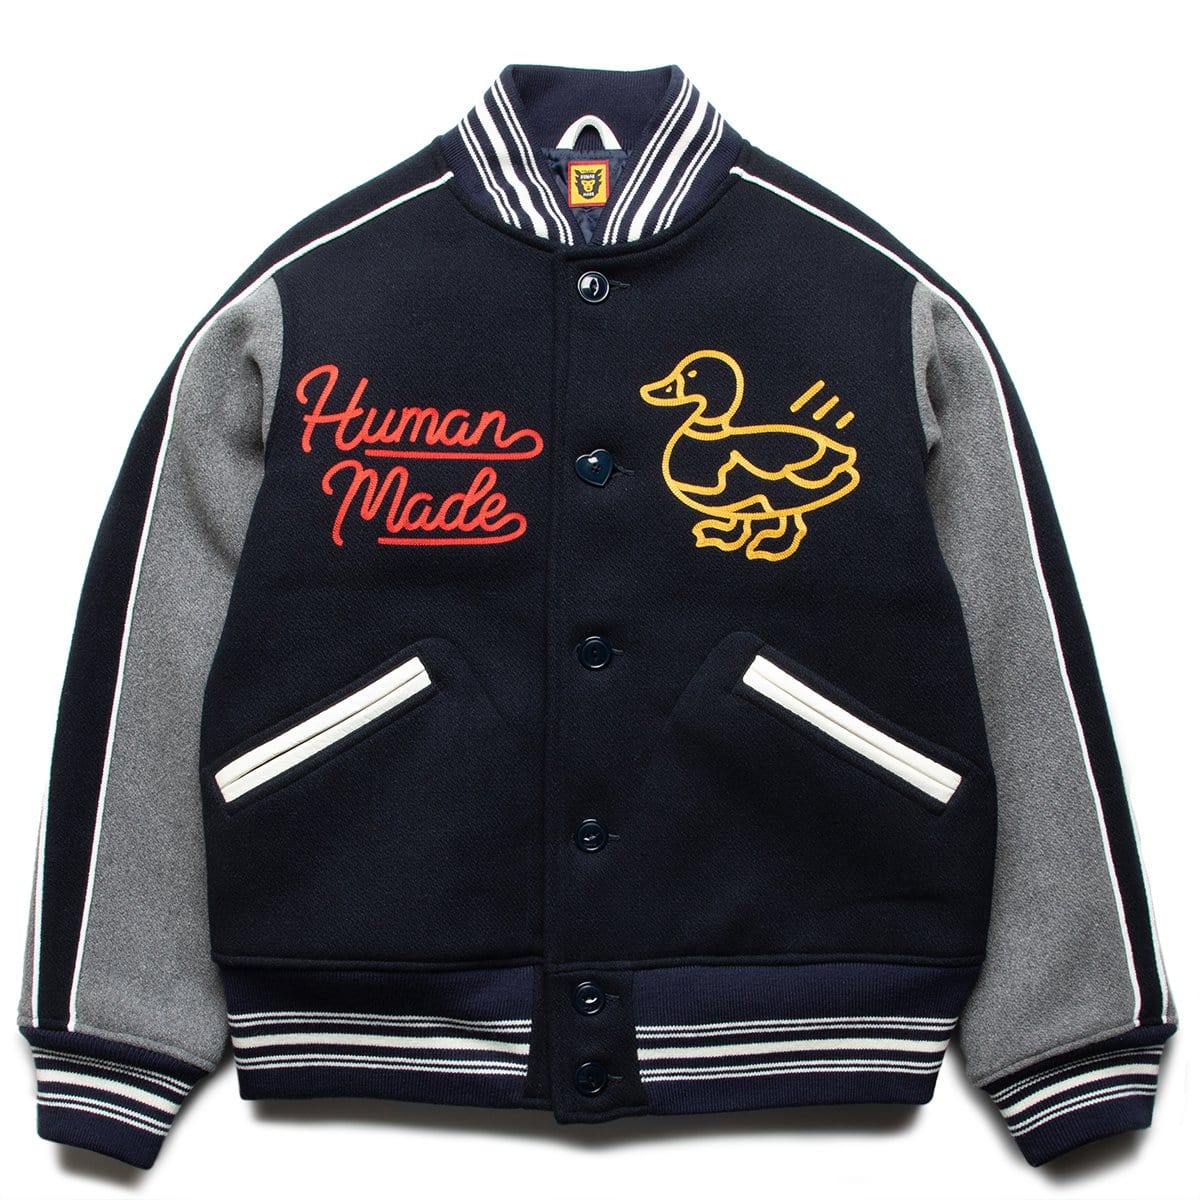 Human Made Varsity Jacket